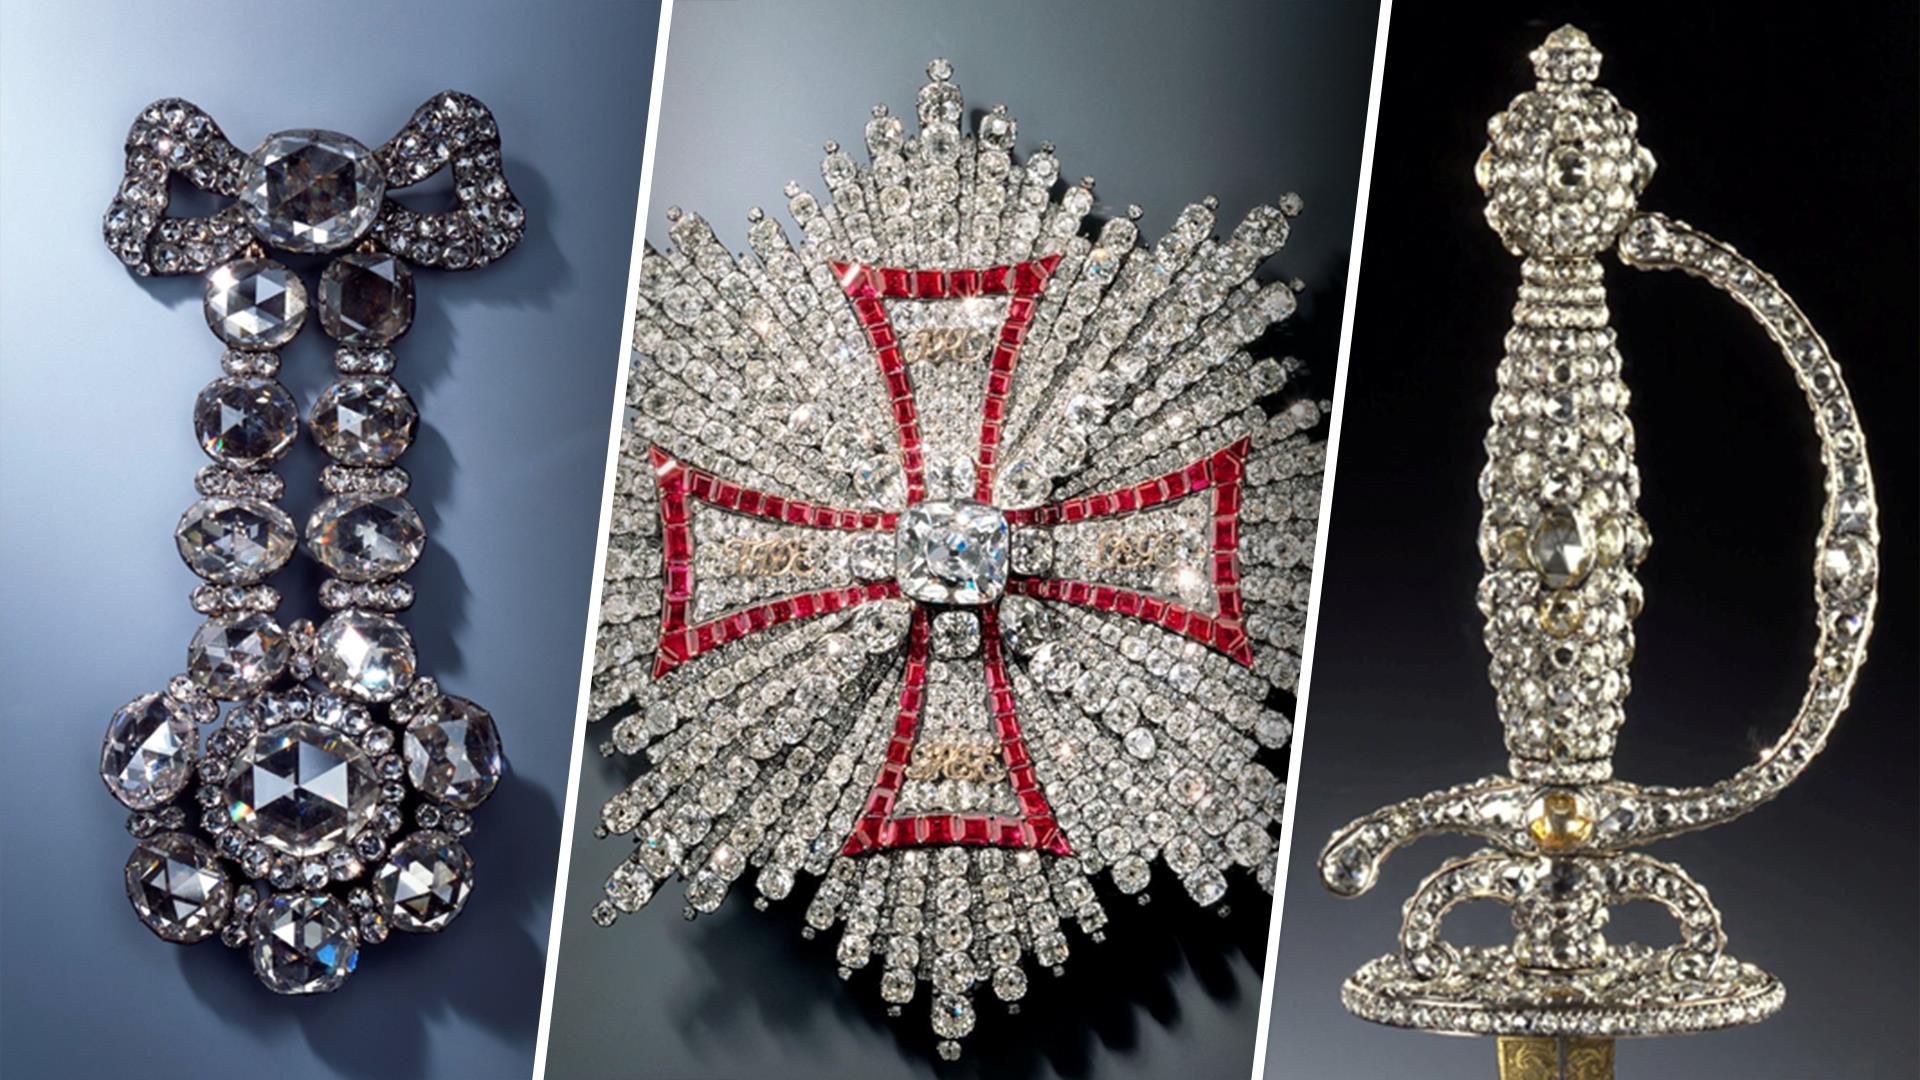 سه ست بی قیمت از جواهرات قرن 18